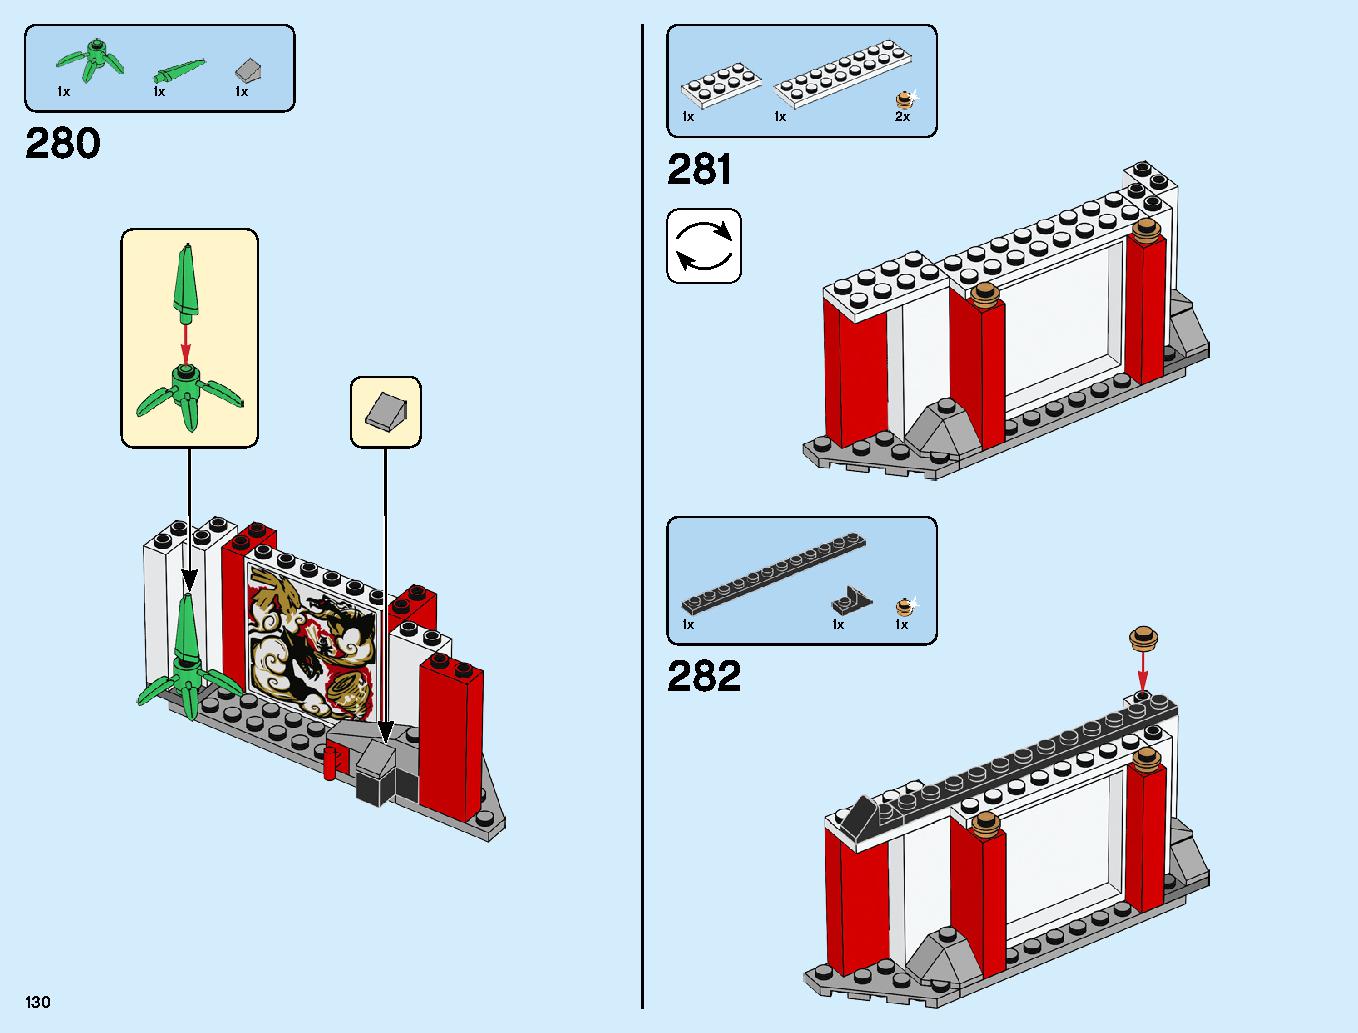 ニンジャ道場 70670 レゴの商品情報 レゴの説明書・組立方法 130 page